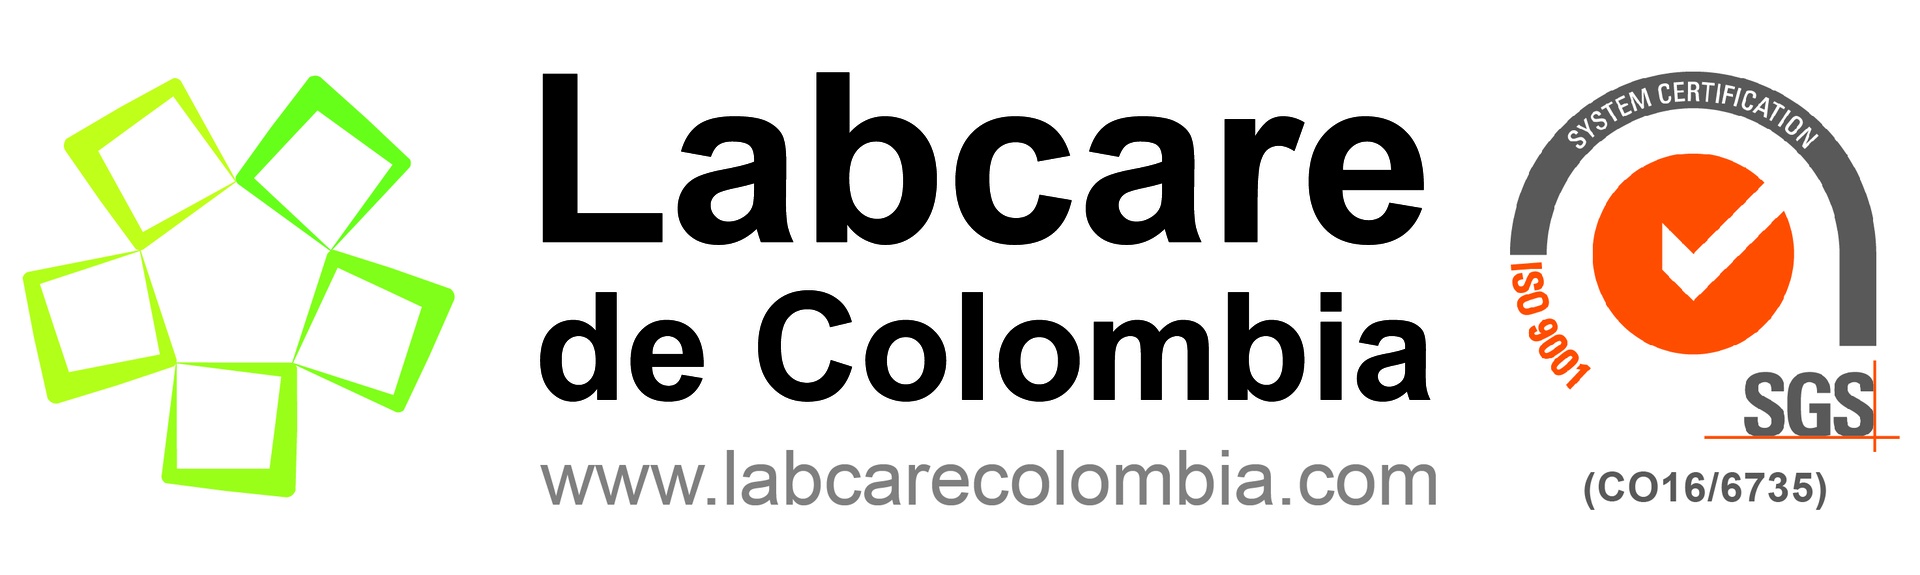 Labcare de Colombia S.A.S.